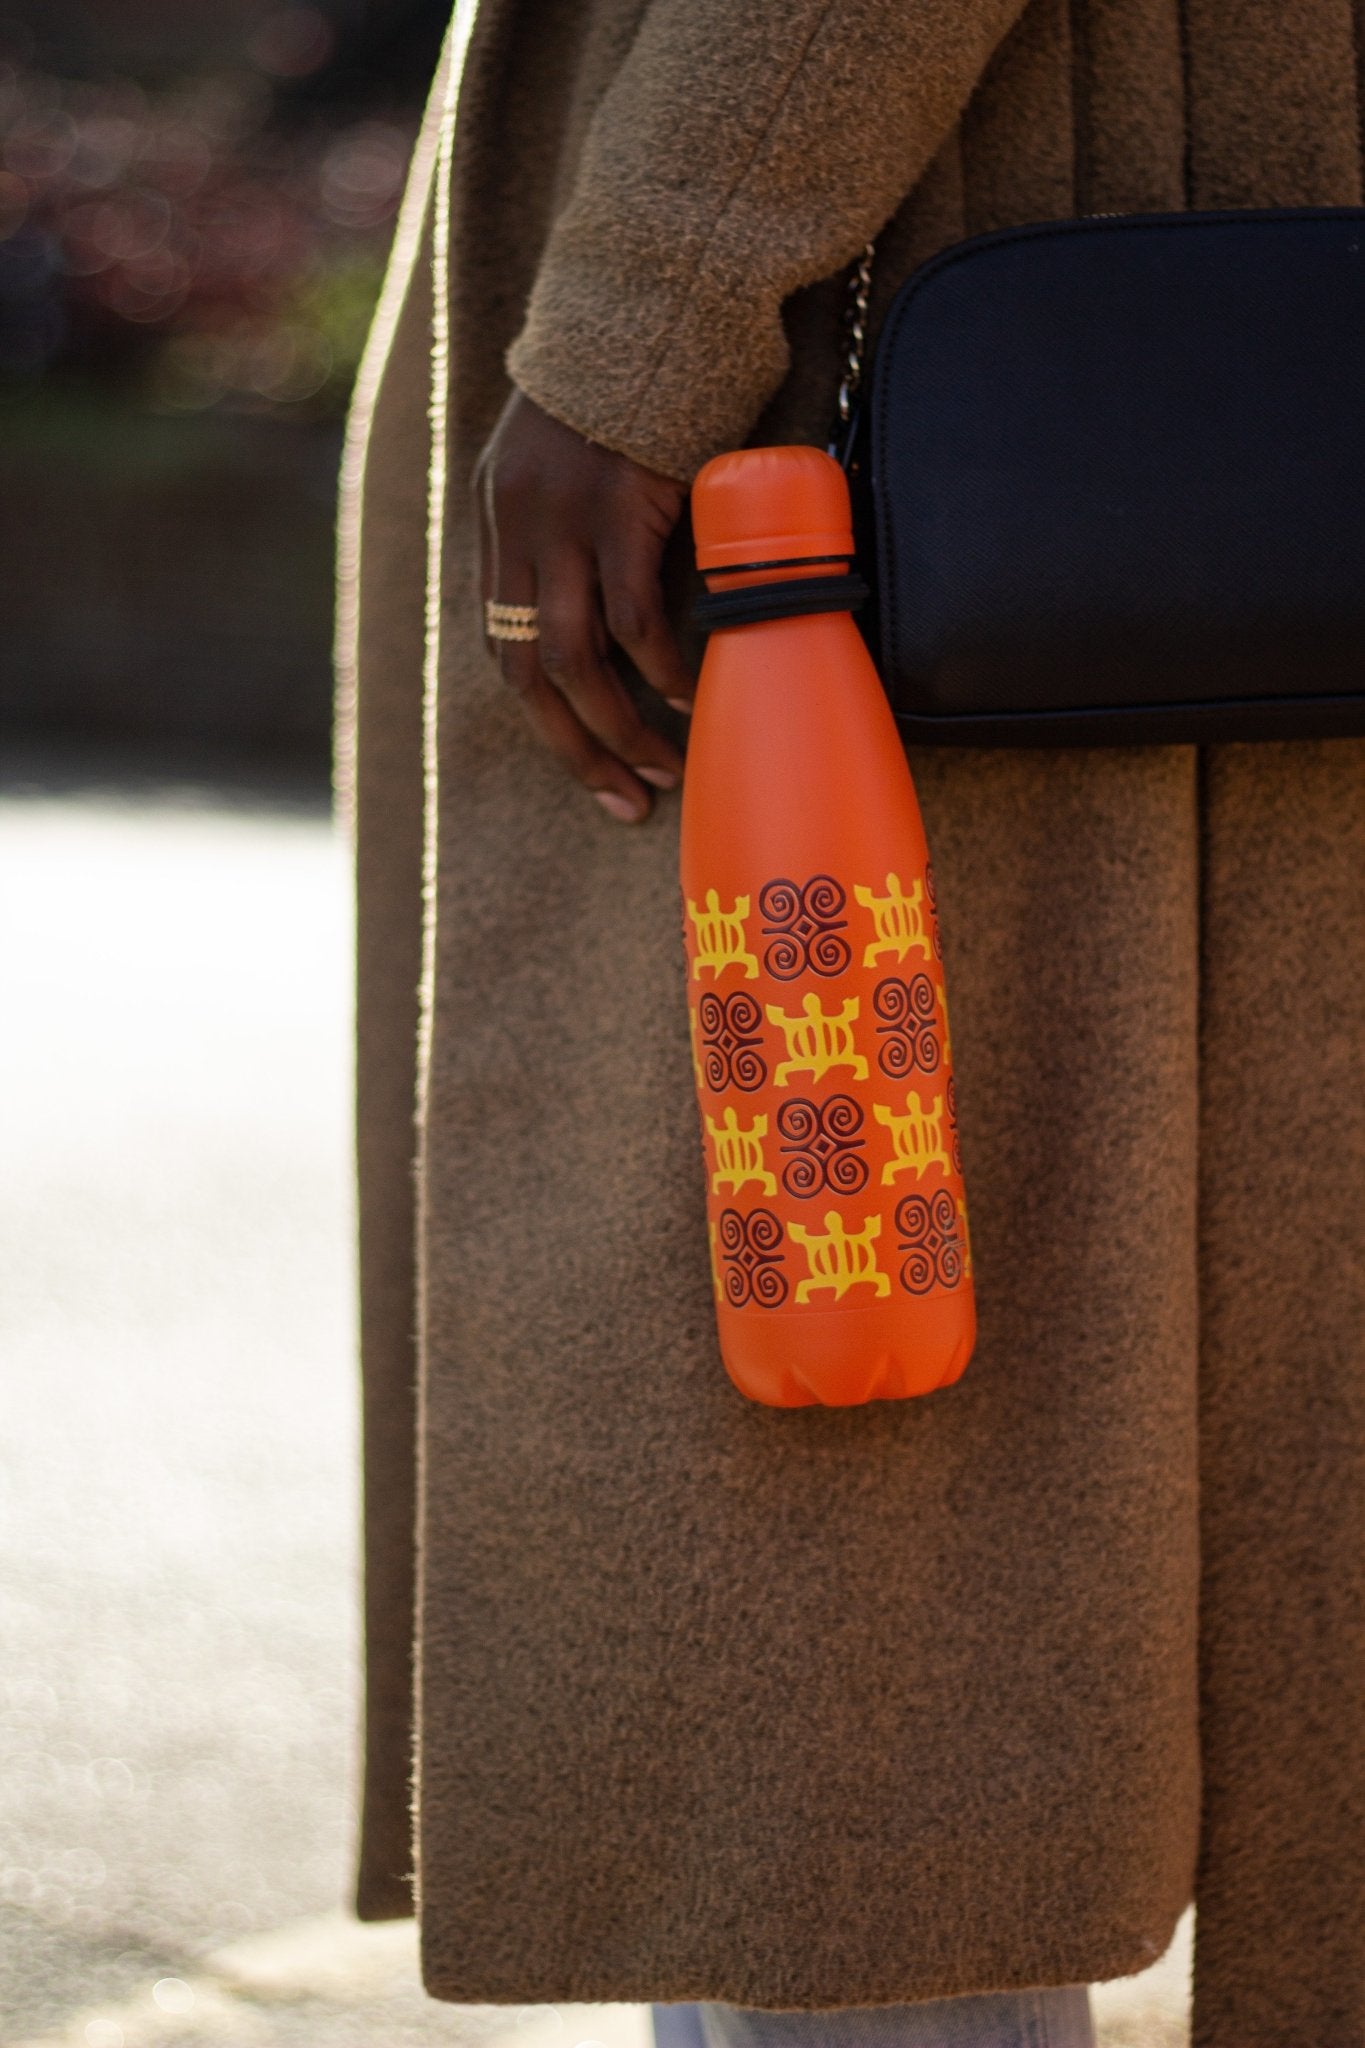 Orange bottle hanging off lady's hand bag